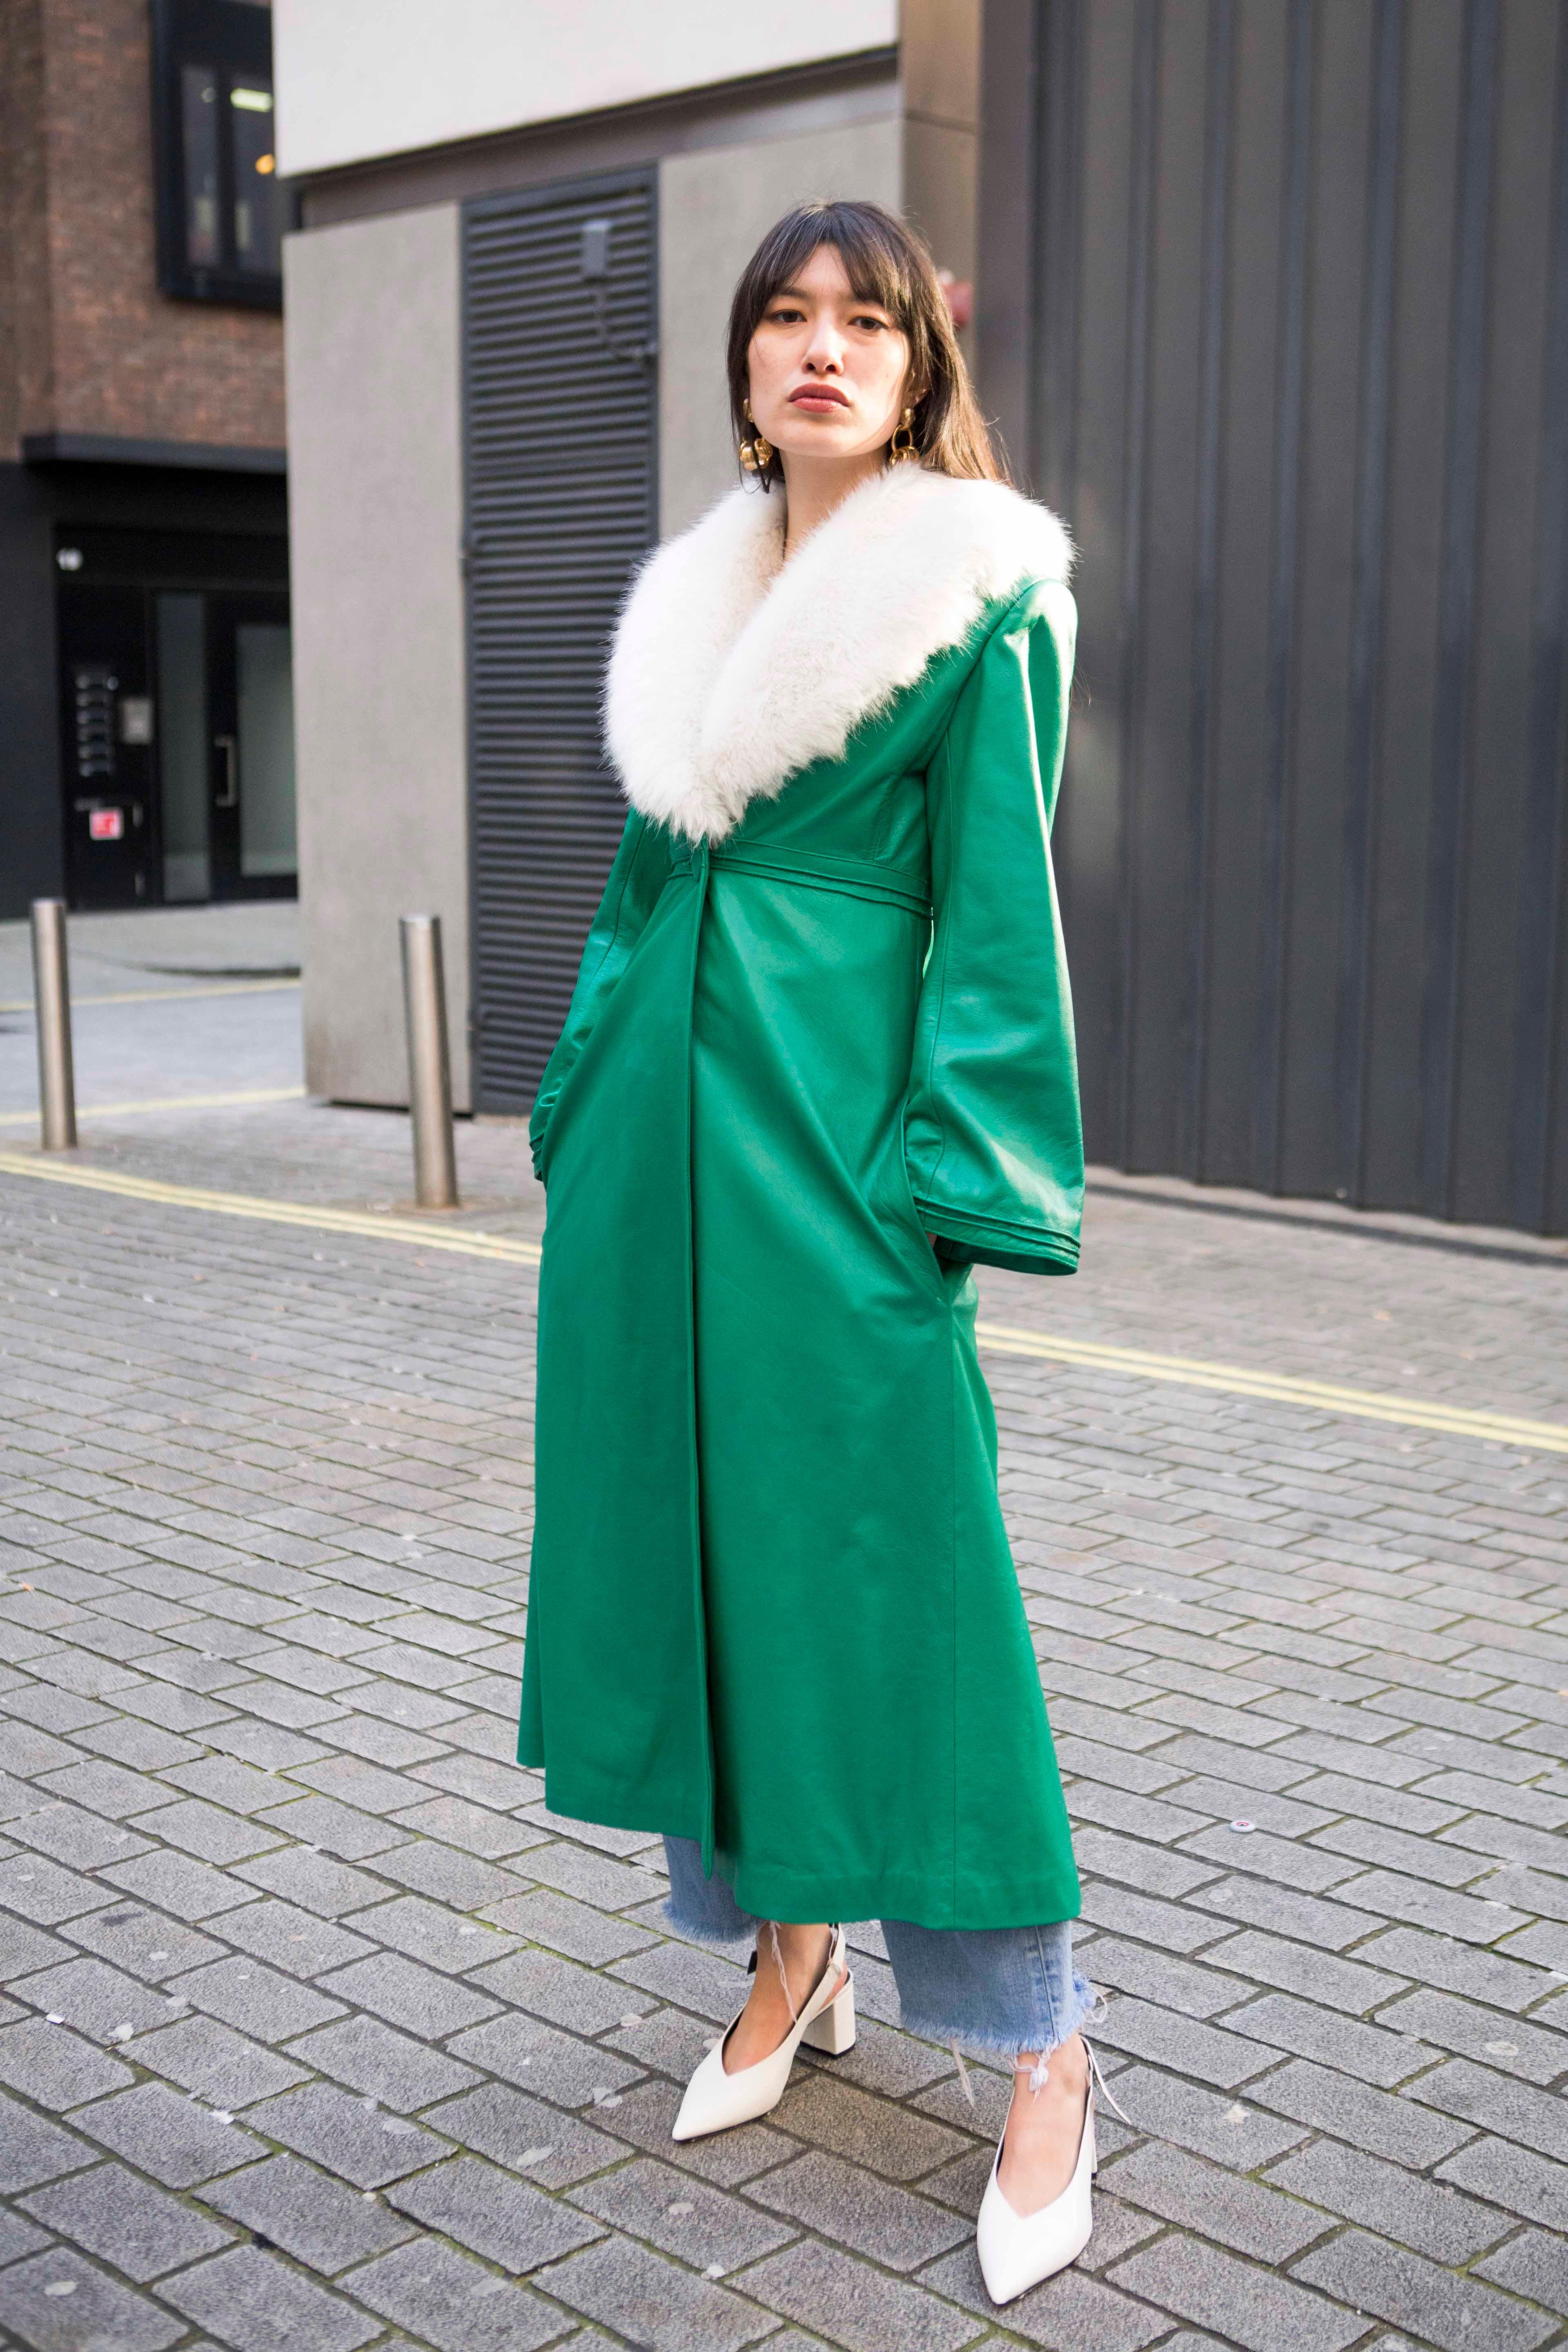 Verheyen London Edward Leather Coat in Green & White Faux Fur - Size 8 UK  For Sale 7